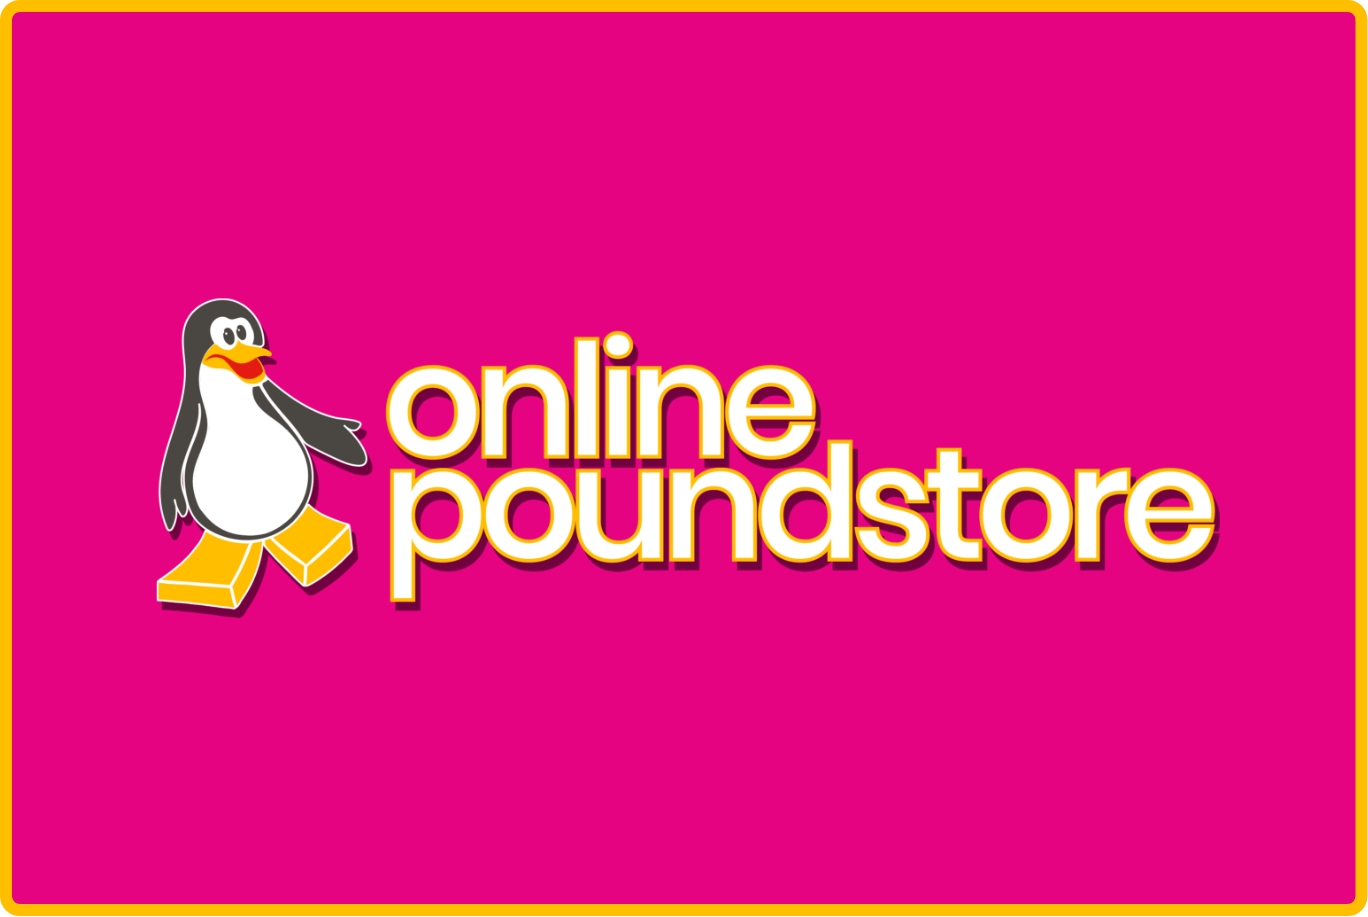 Online Pound Store